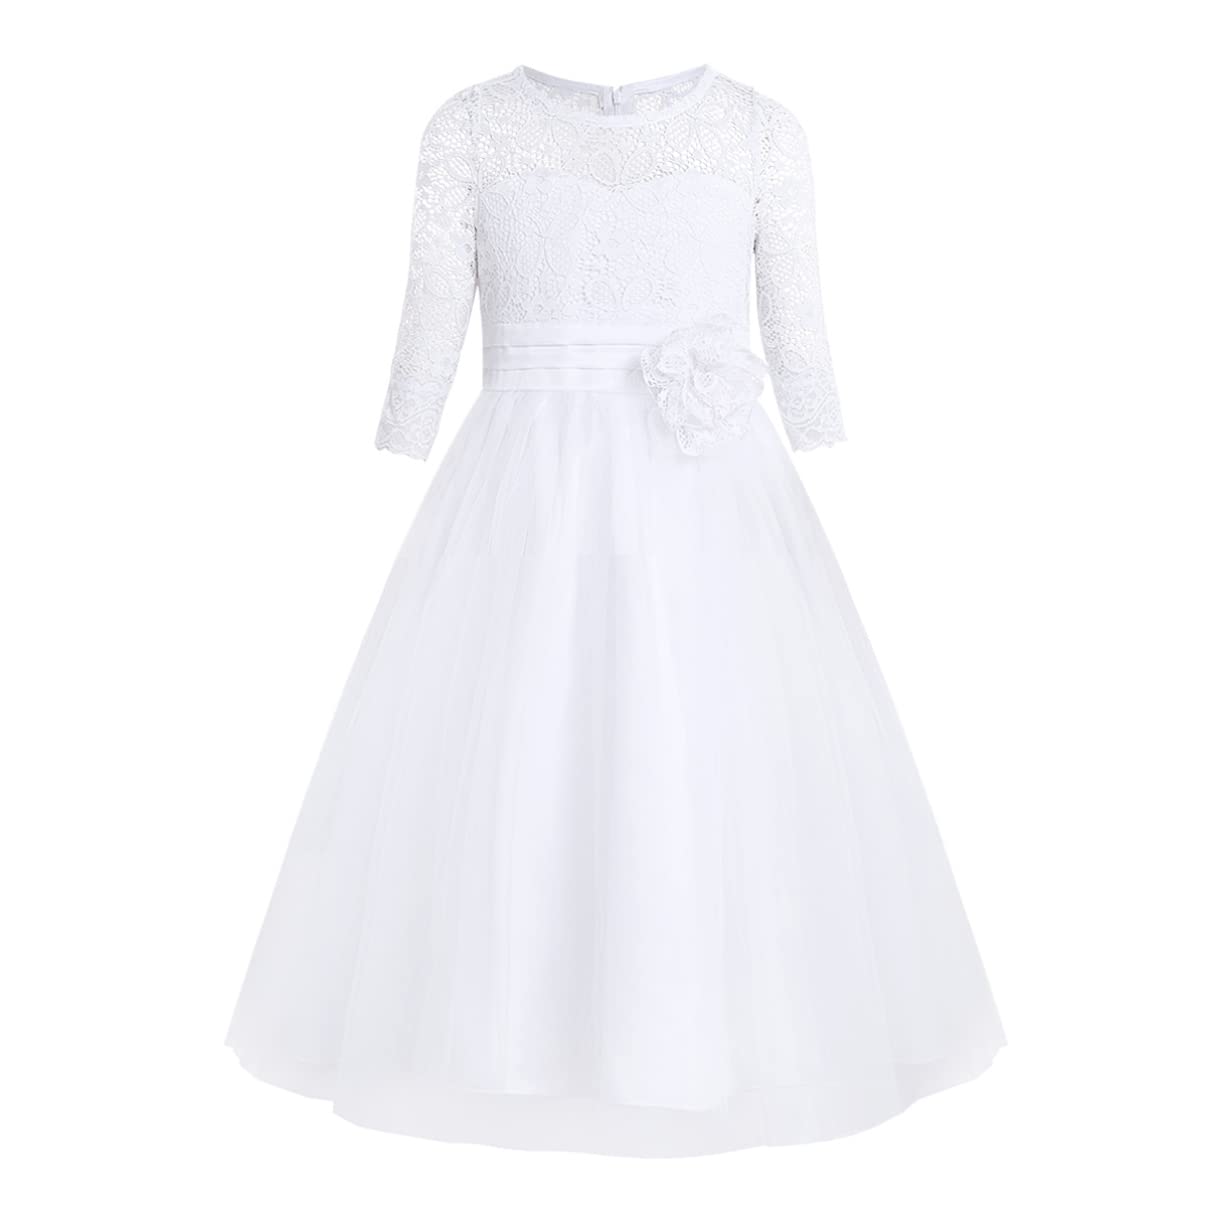 iixpin Mädchen Prinzessin Kleid Halb-Arm Weiß Kommunionkleid Party Kleid Spitze Festlich Festzug Brautjungfernkleid 104-164 Weiß 164